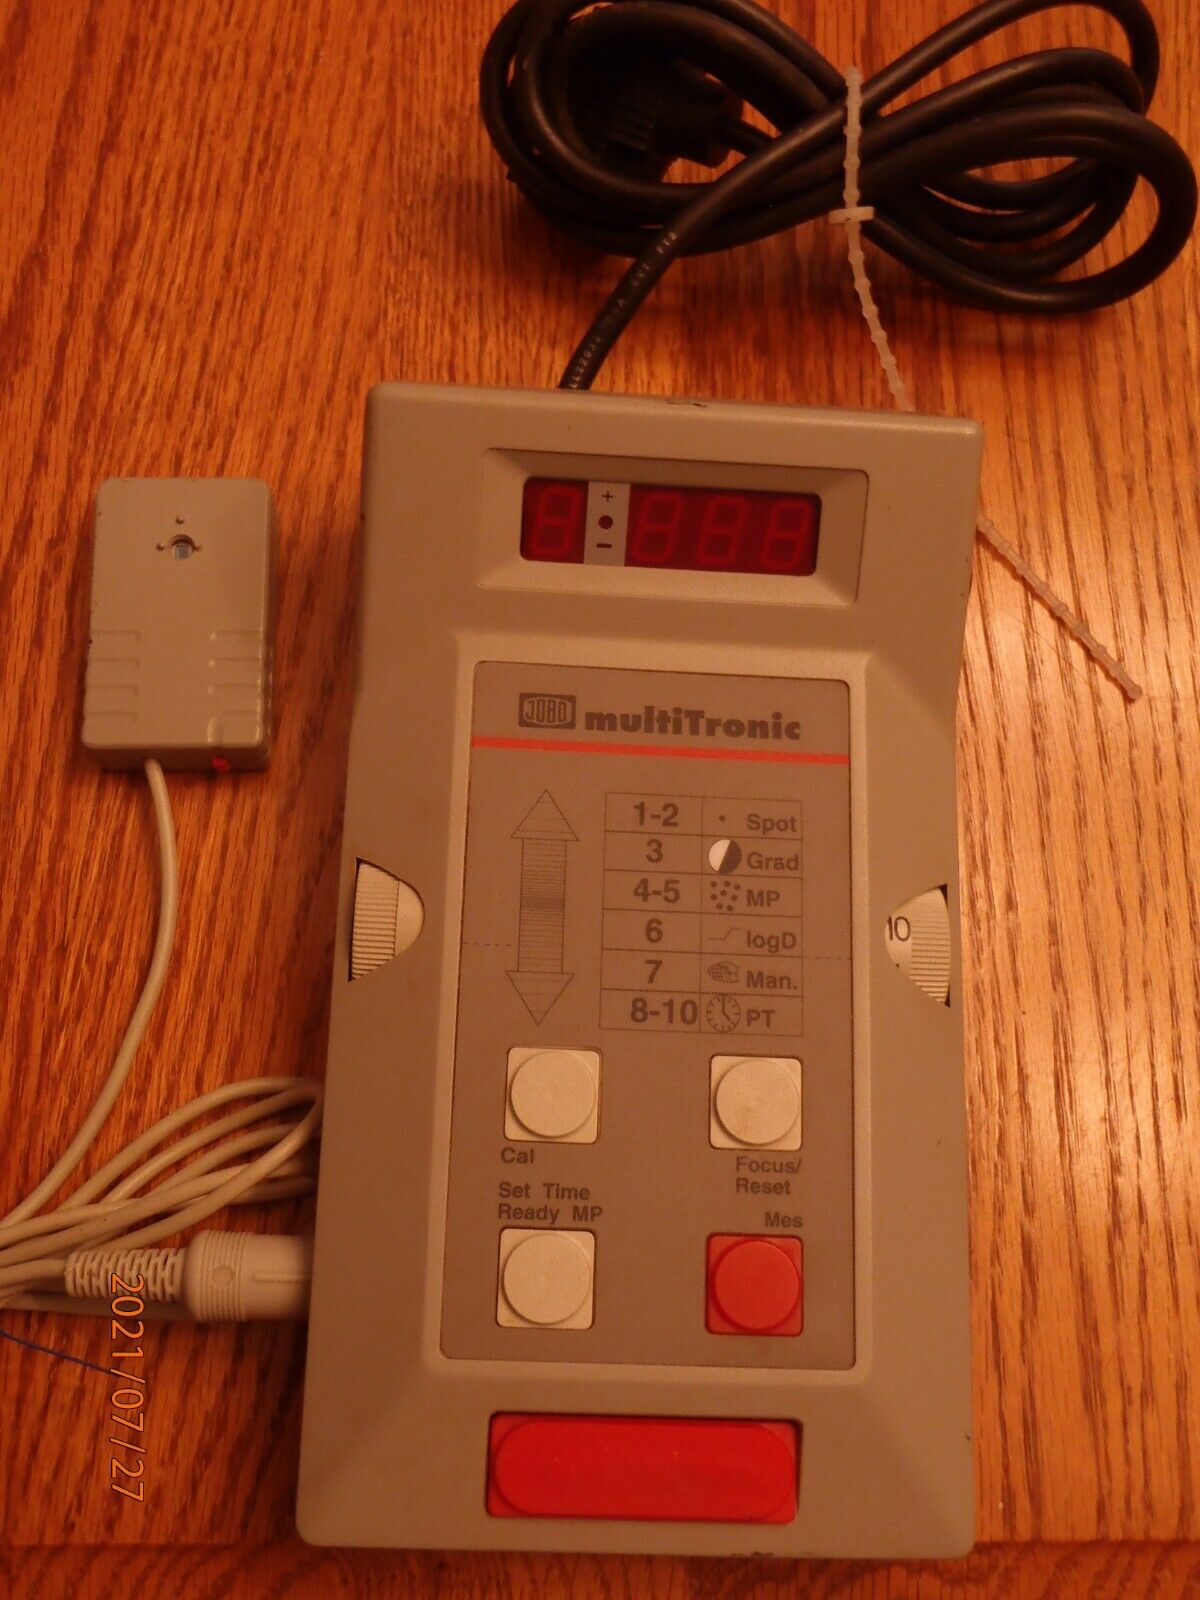 Jobo Multitronic 6220 Darkroom Timer, Exposure Meter, Contact Making Clock